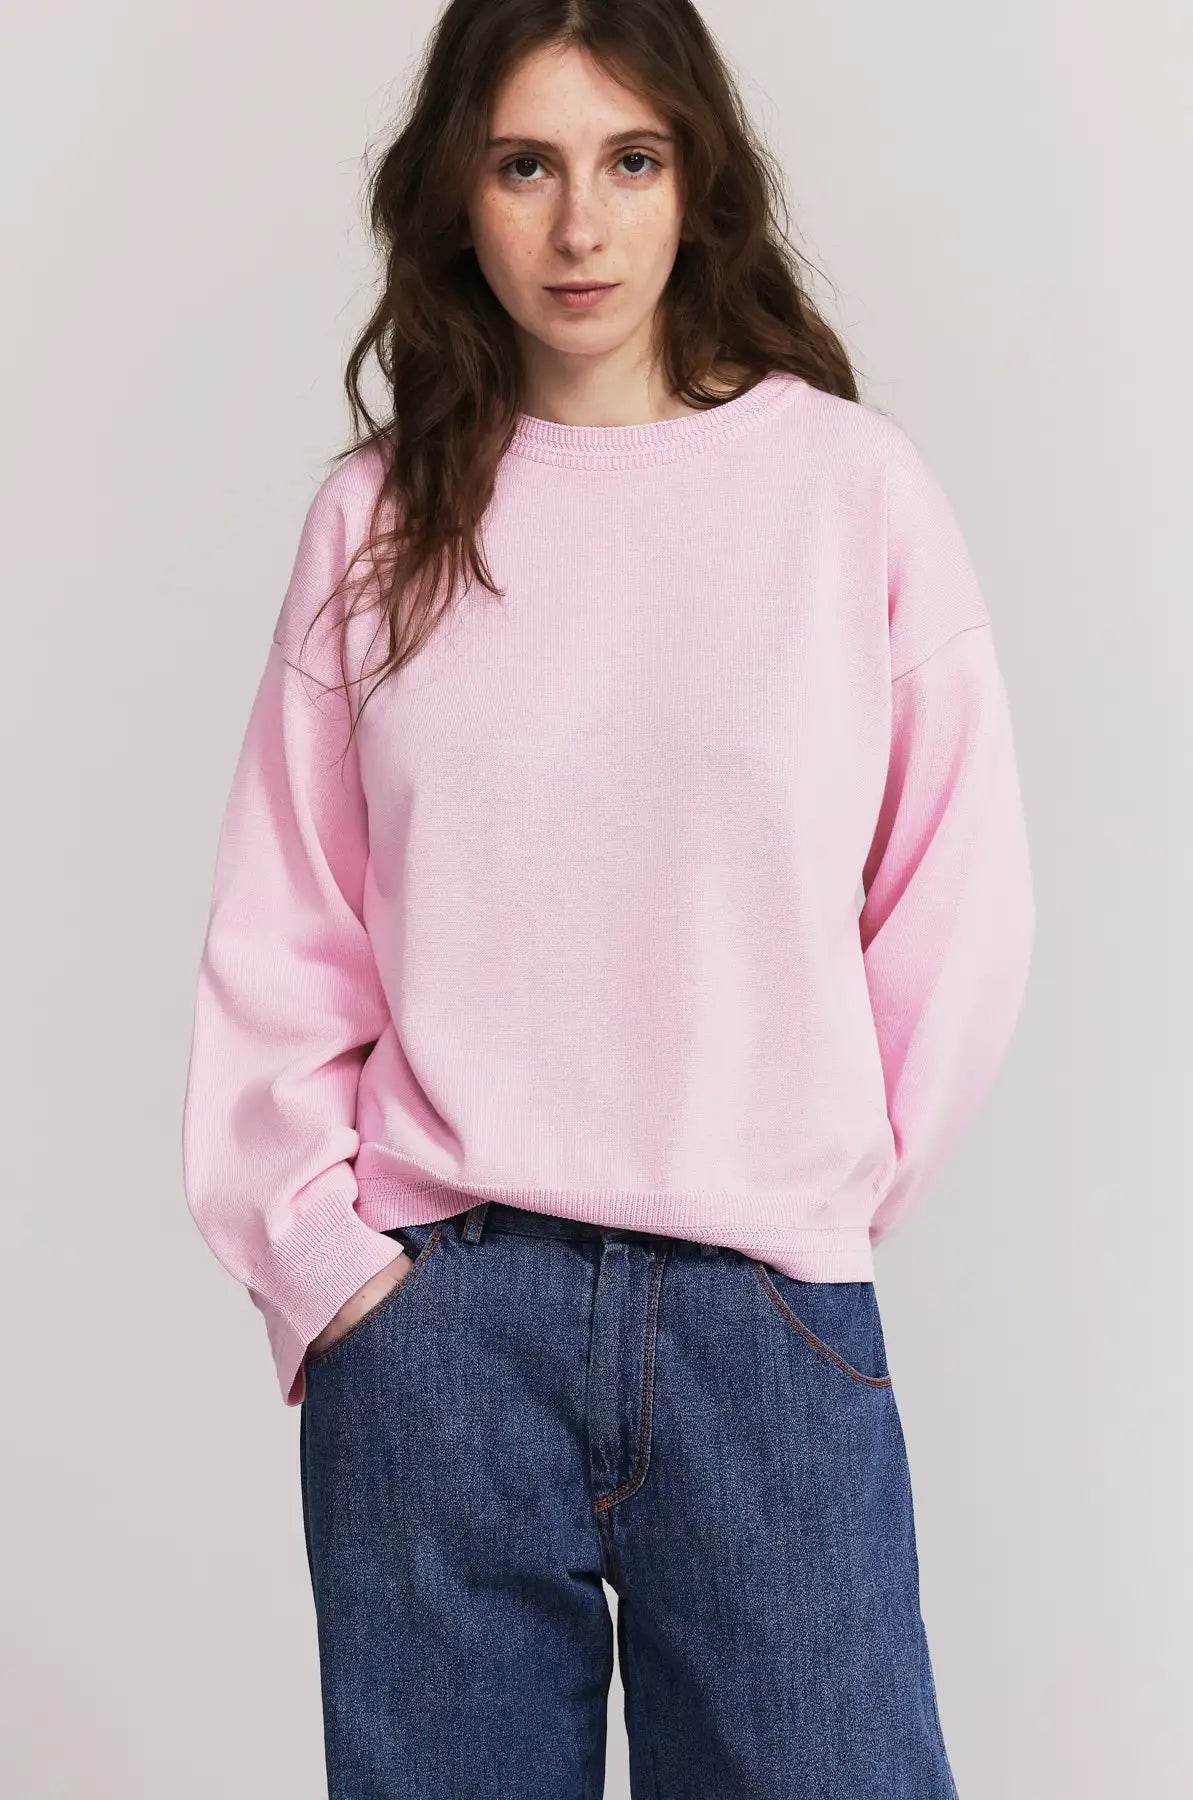 Produit maille Loucine couleur rose tricoté par la marque Parisienne Tricots Jean Marc 1972.